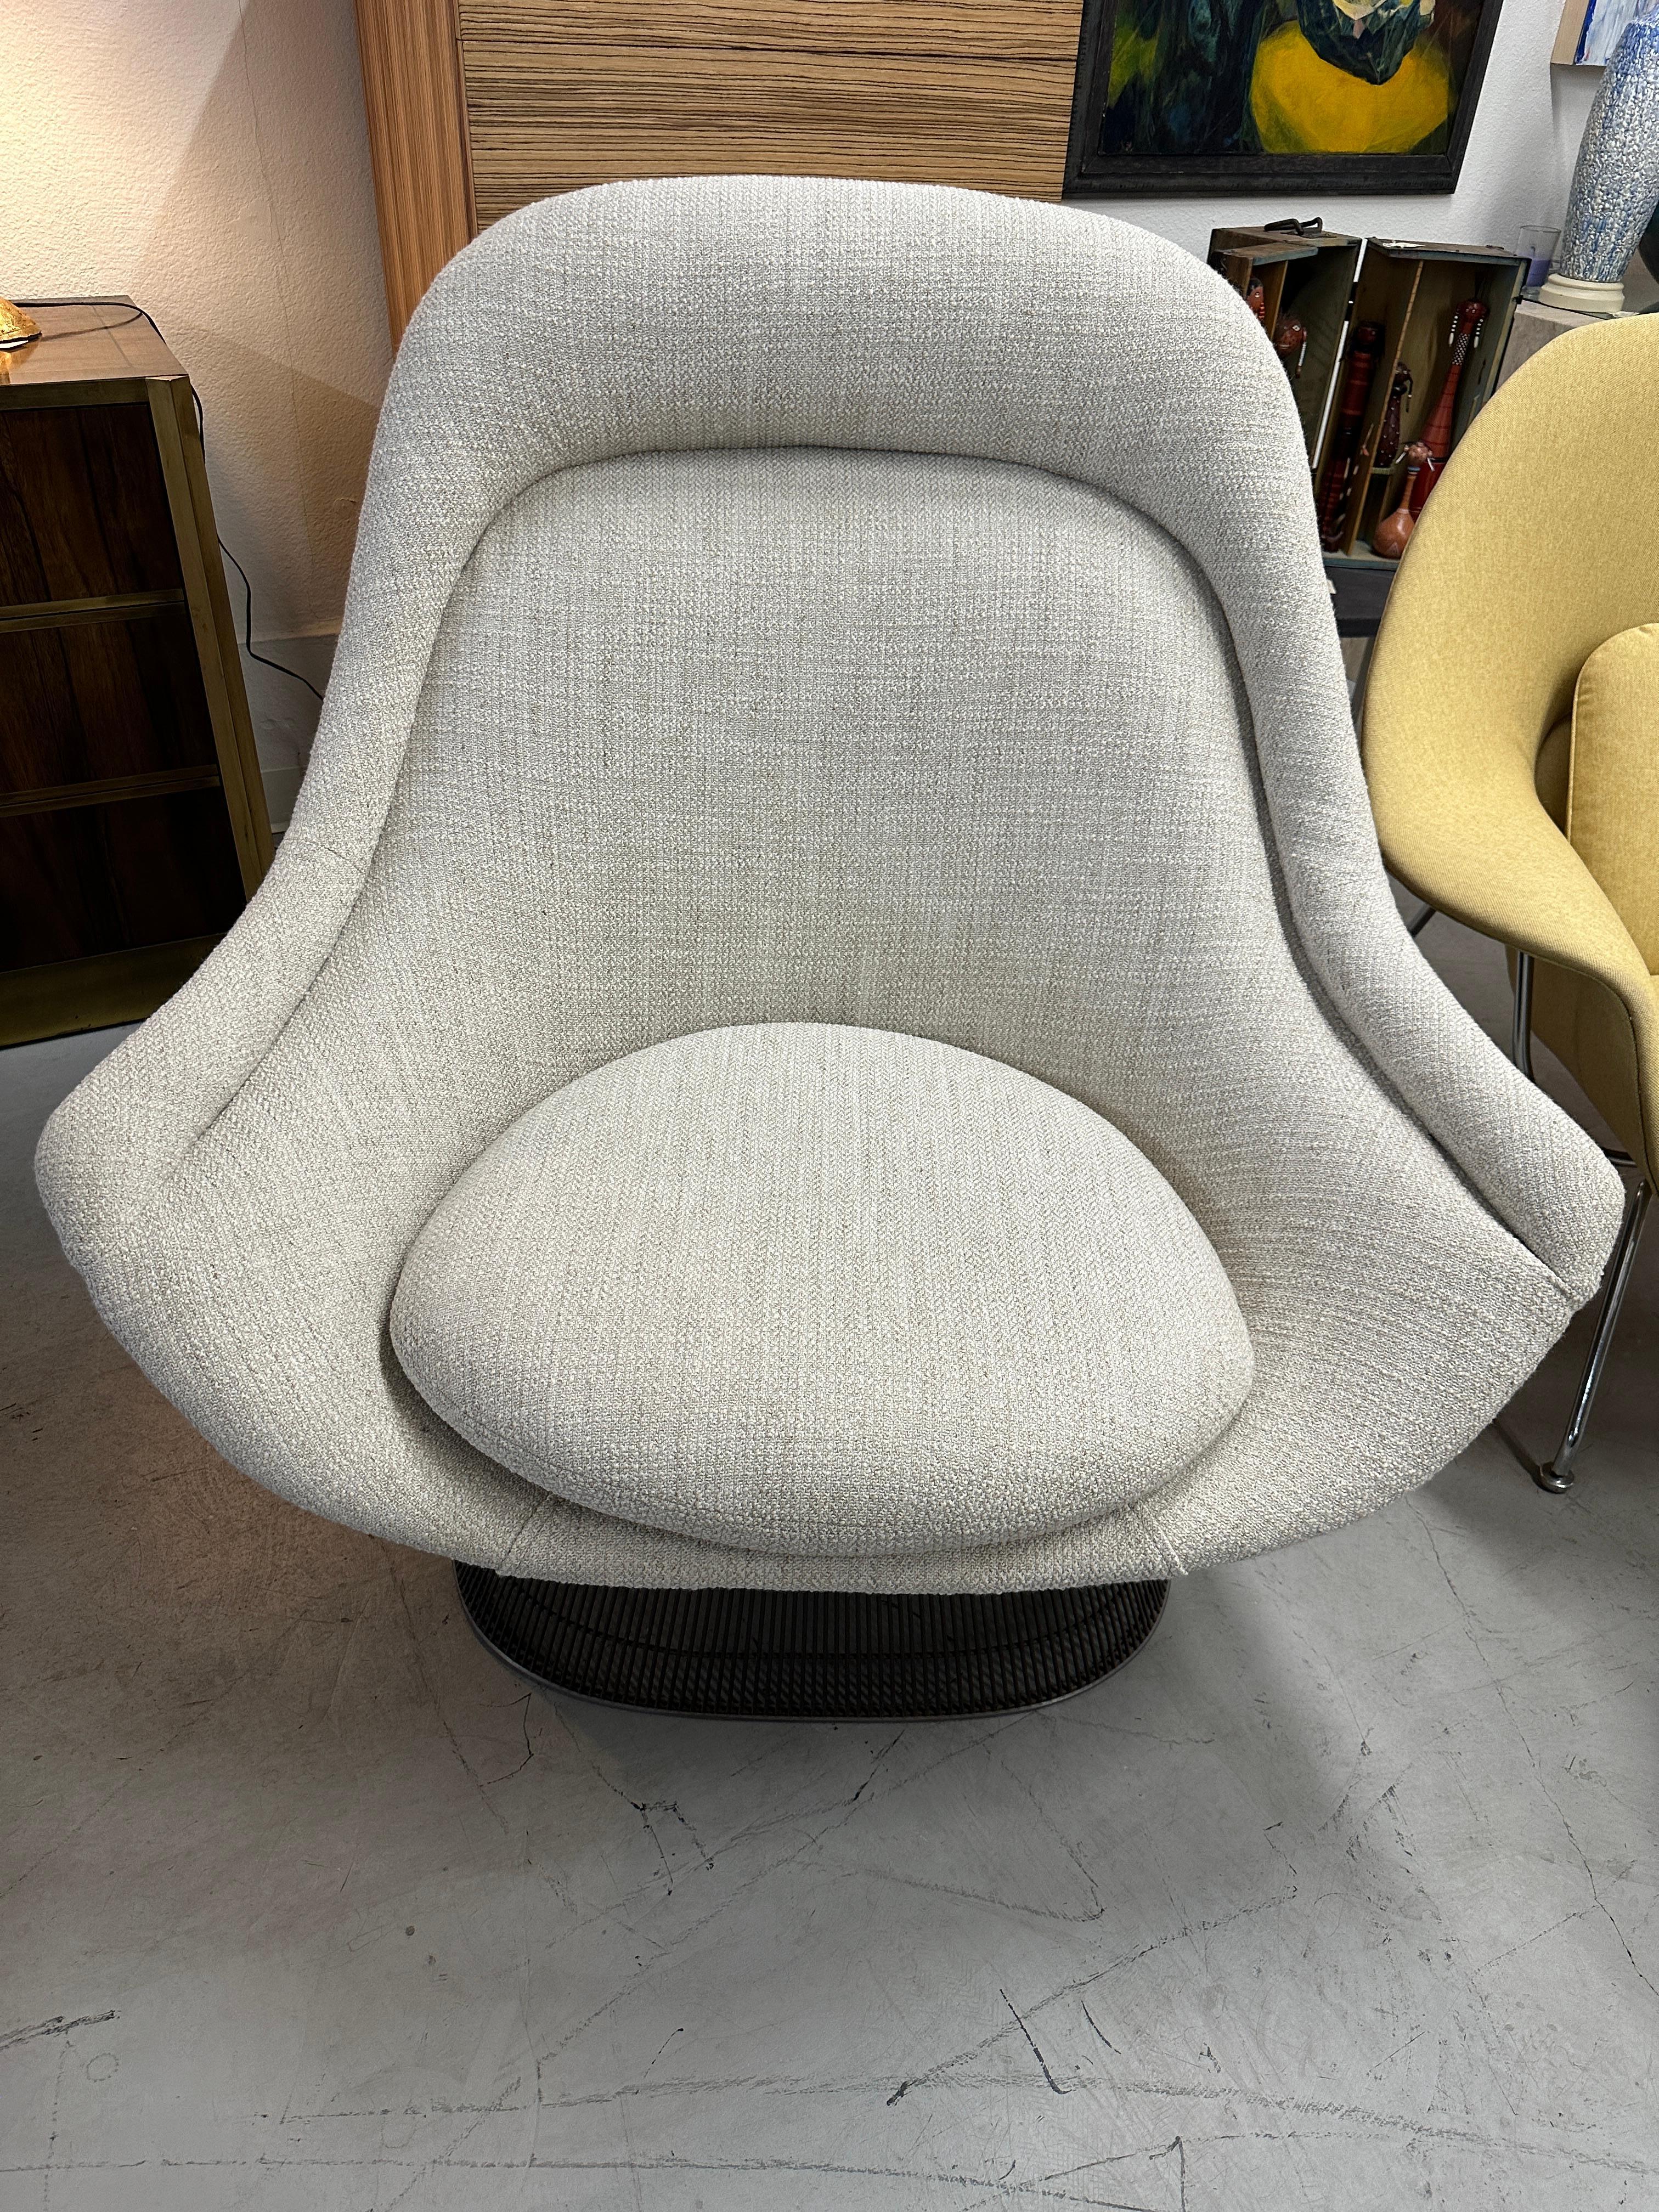 Une magnifique chaise Bigli de Warren Platner pour Knoll. Achetée à l'origine dans les années 1980, cette chaise a été récemment retapissée dans un joli tissu Knoll. Il est en finition bronze métallisé. La chaise est en bon état, bien qu'il y ait